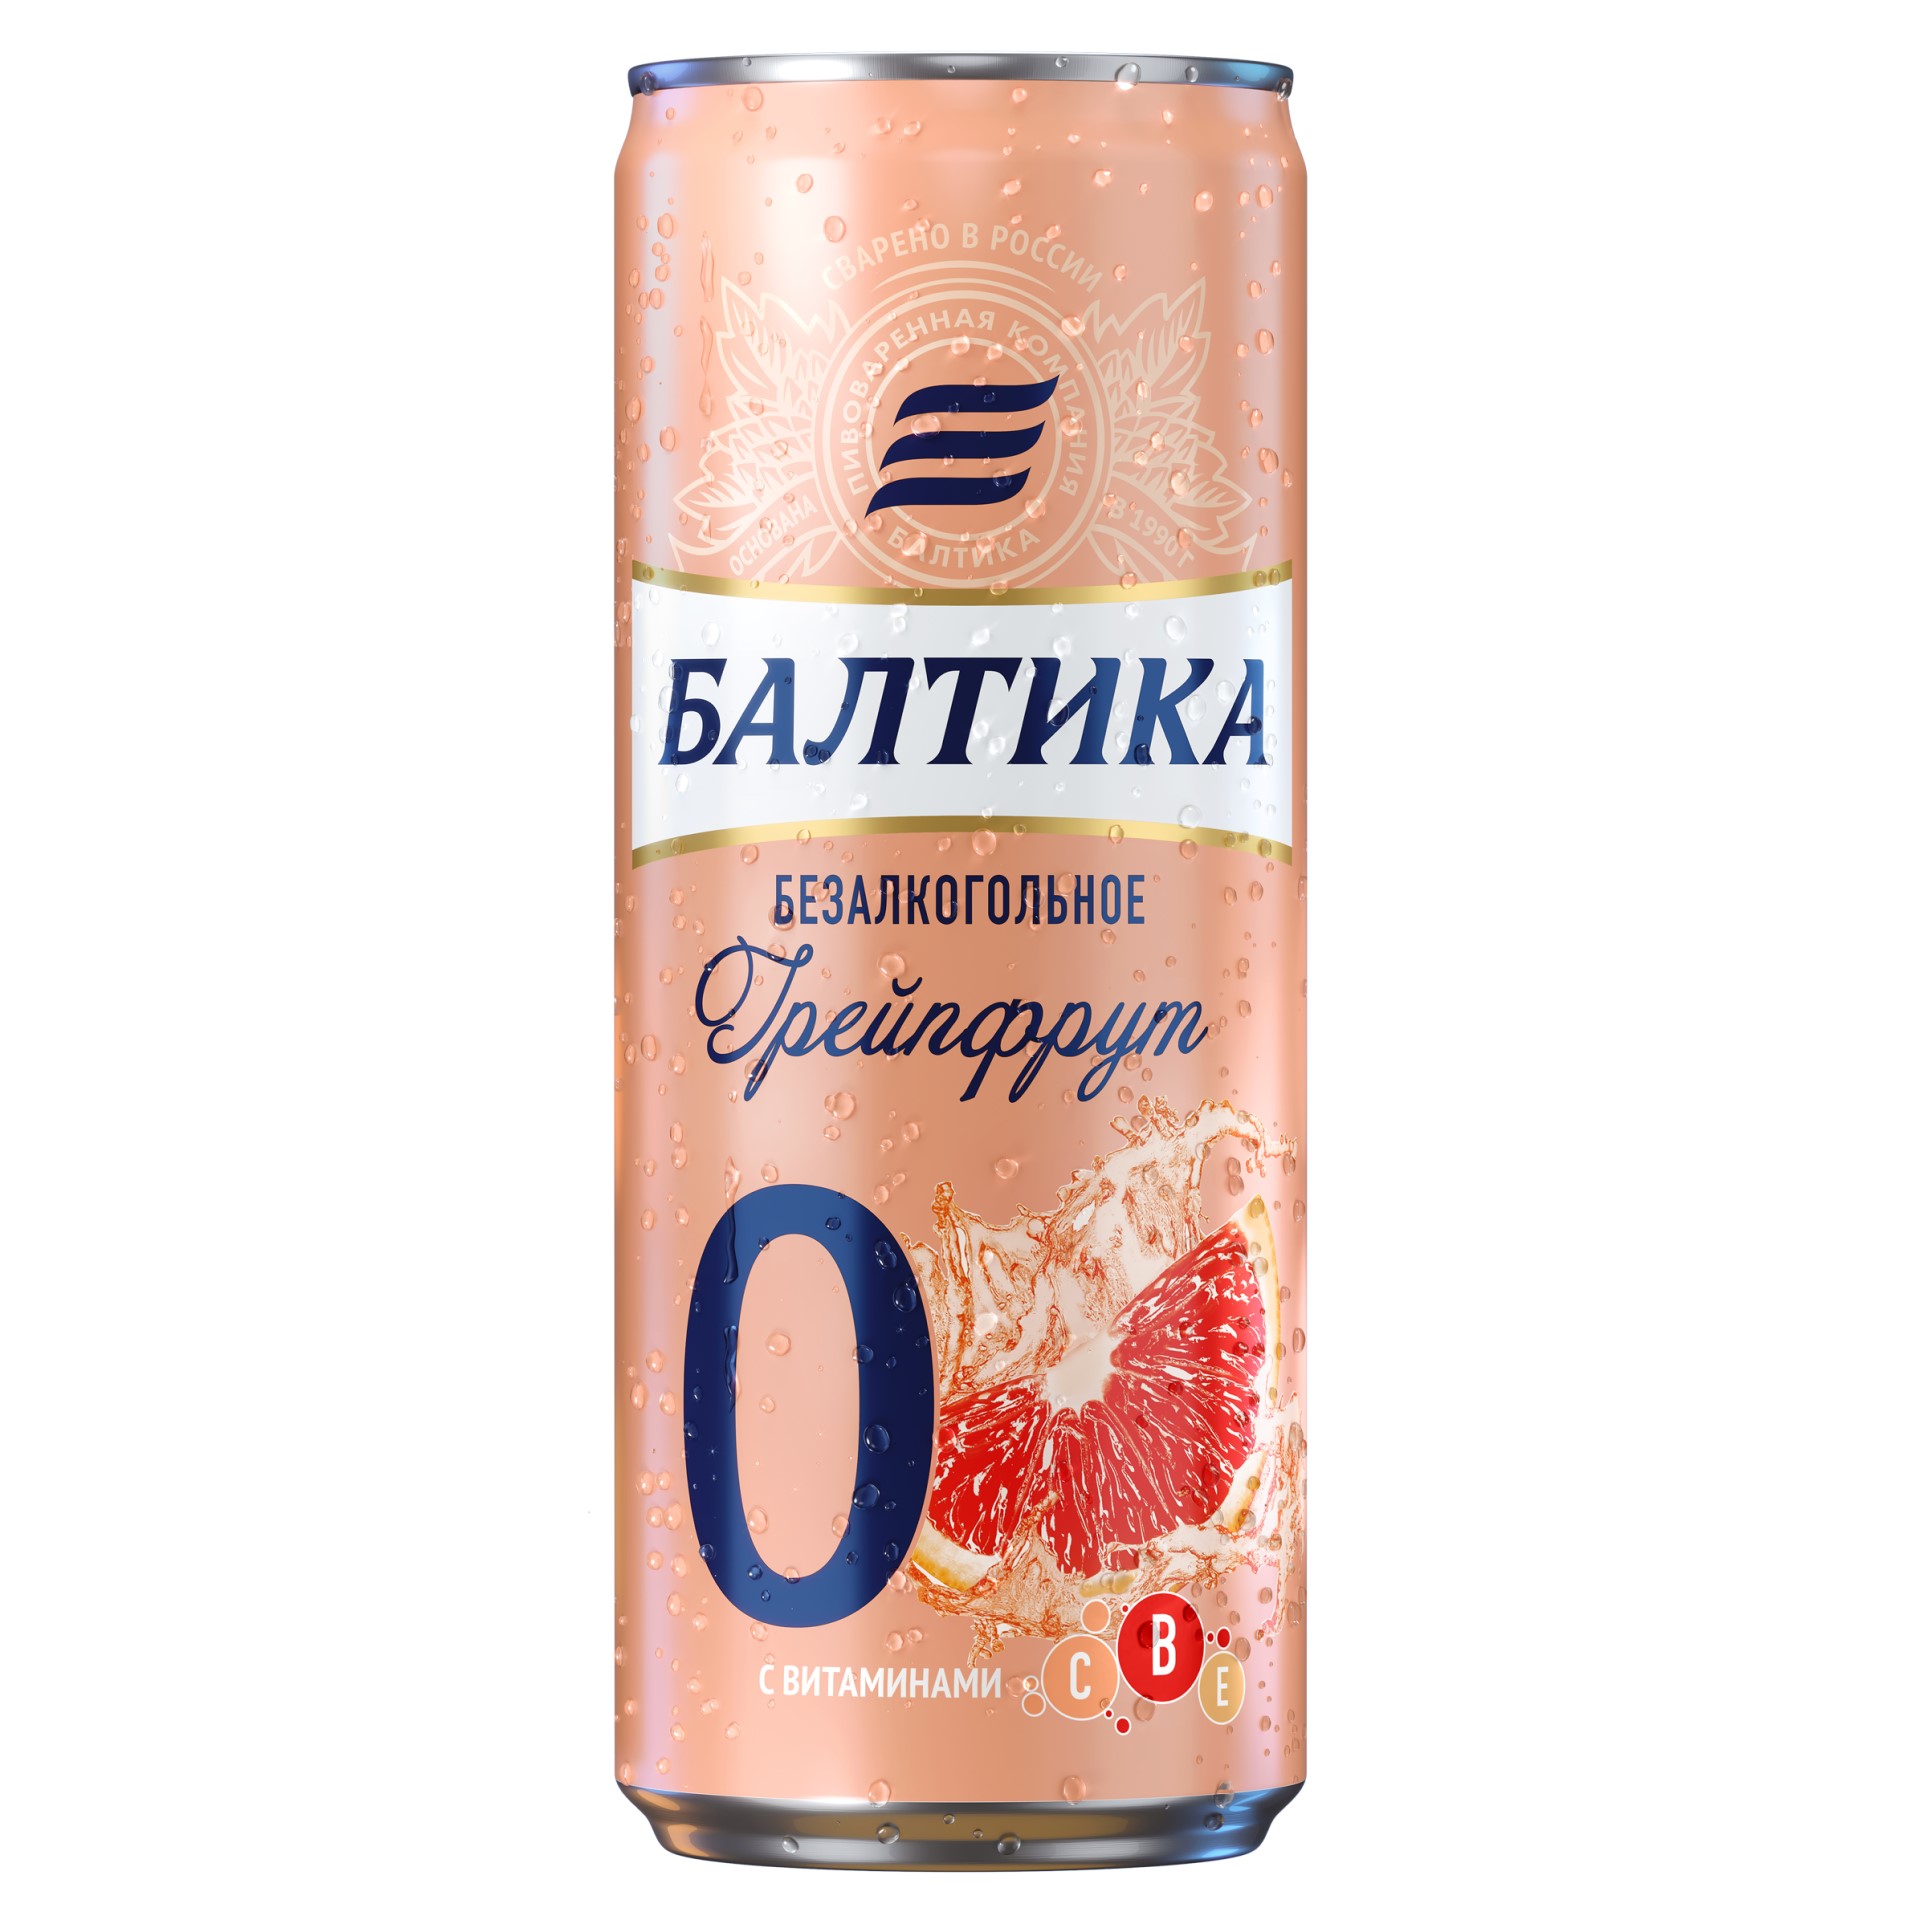 Пивной напиток, Балтика №0 безалкогольное, Грейпфрут, 0.33 л, банка